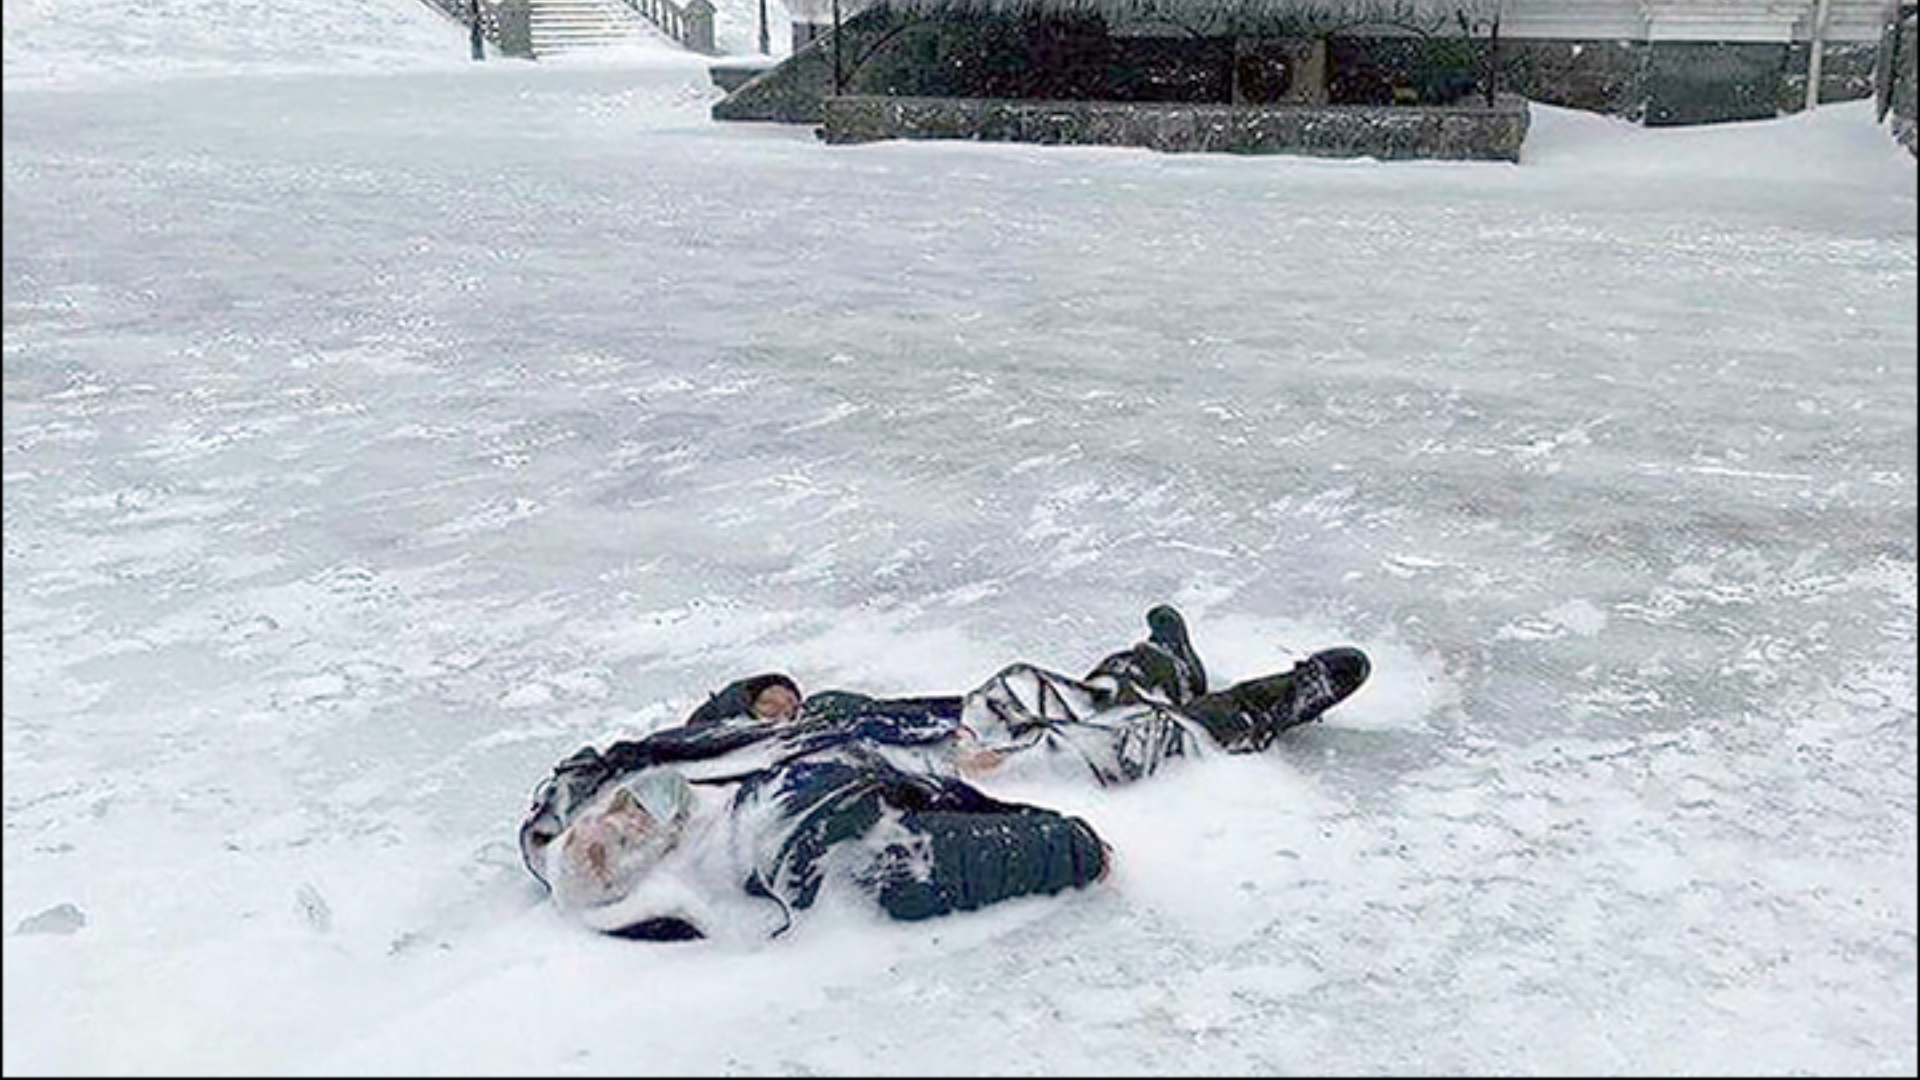 Un hombre congelado fue hallado tras la tormenta gélida en Vladivostok, Rusia. (Foto: Yuri Ufimtsev/The Siberian Times)